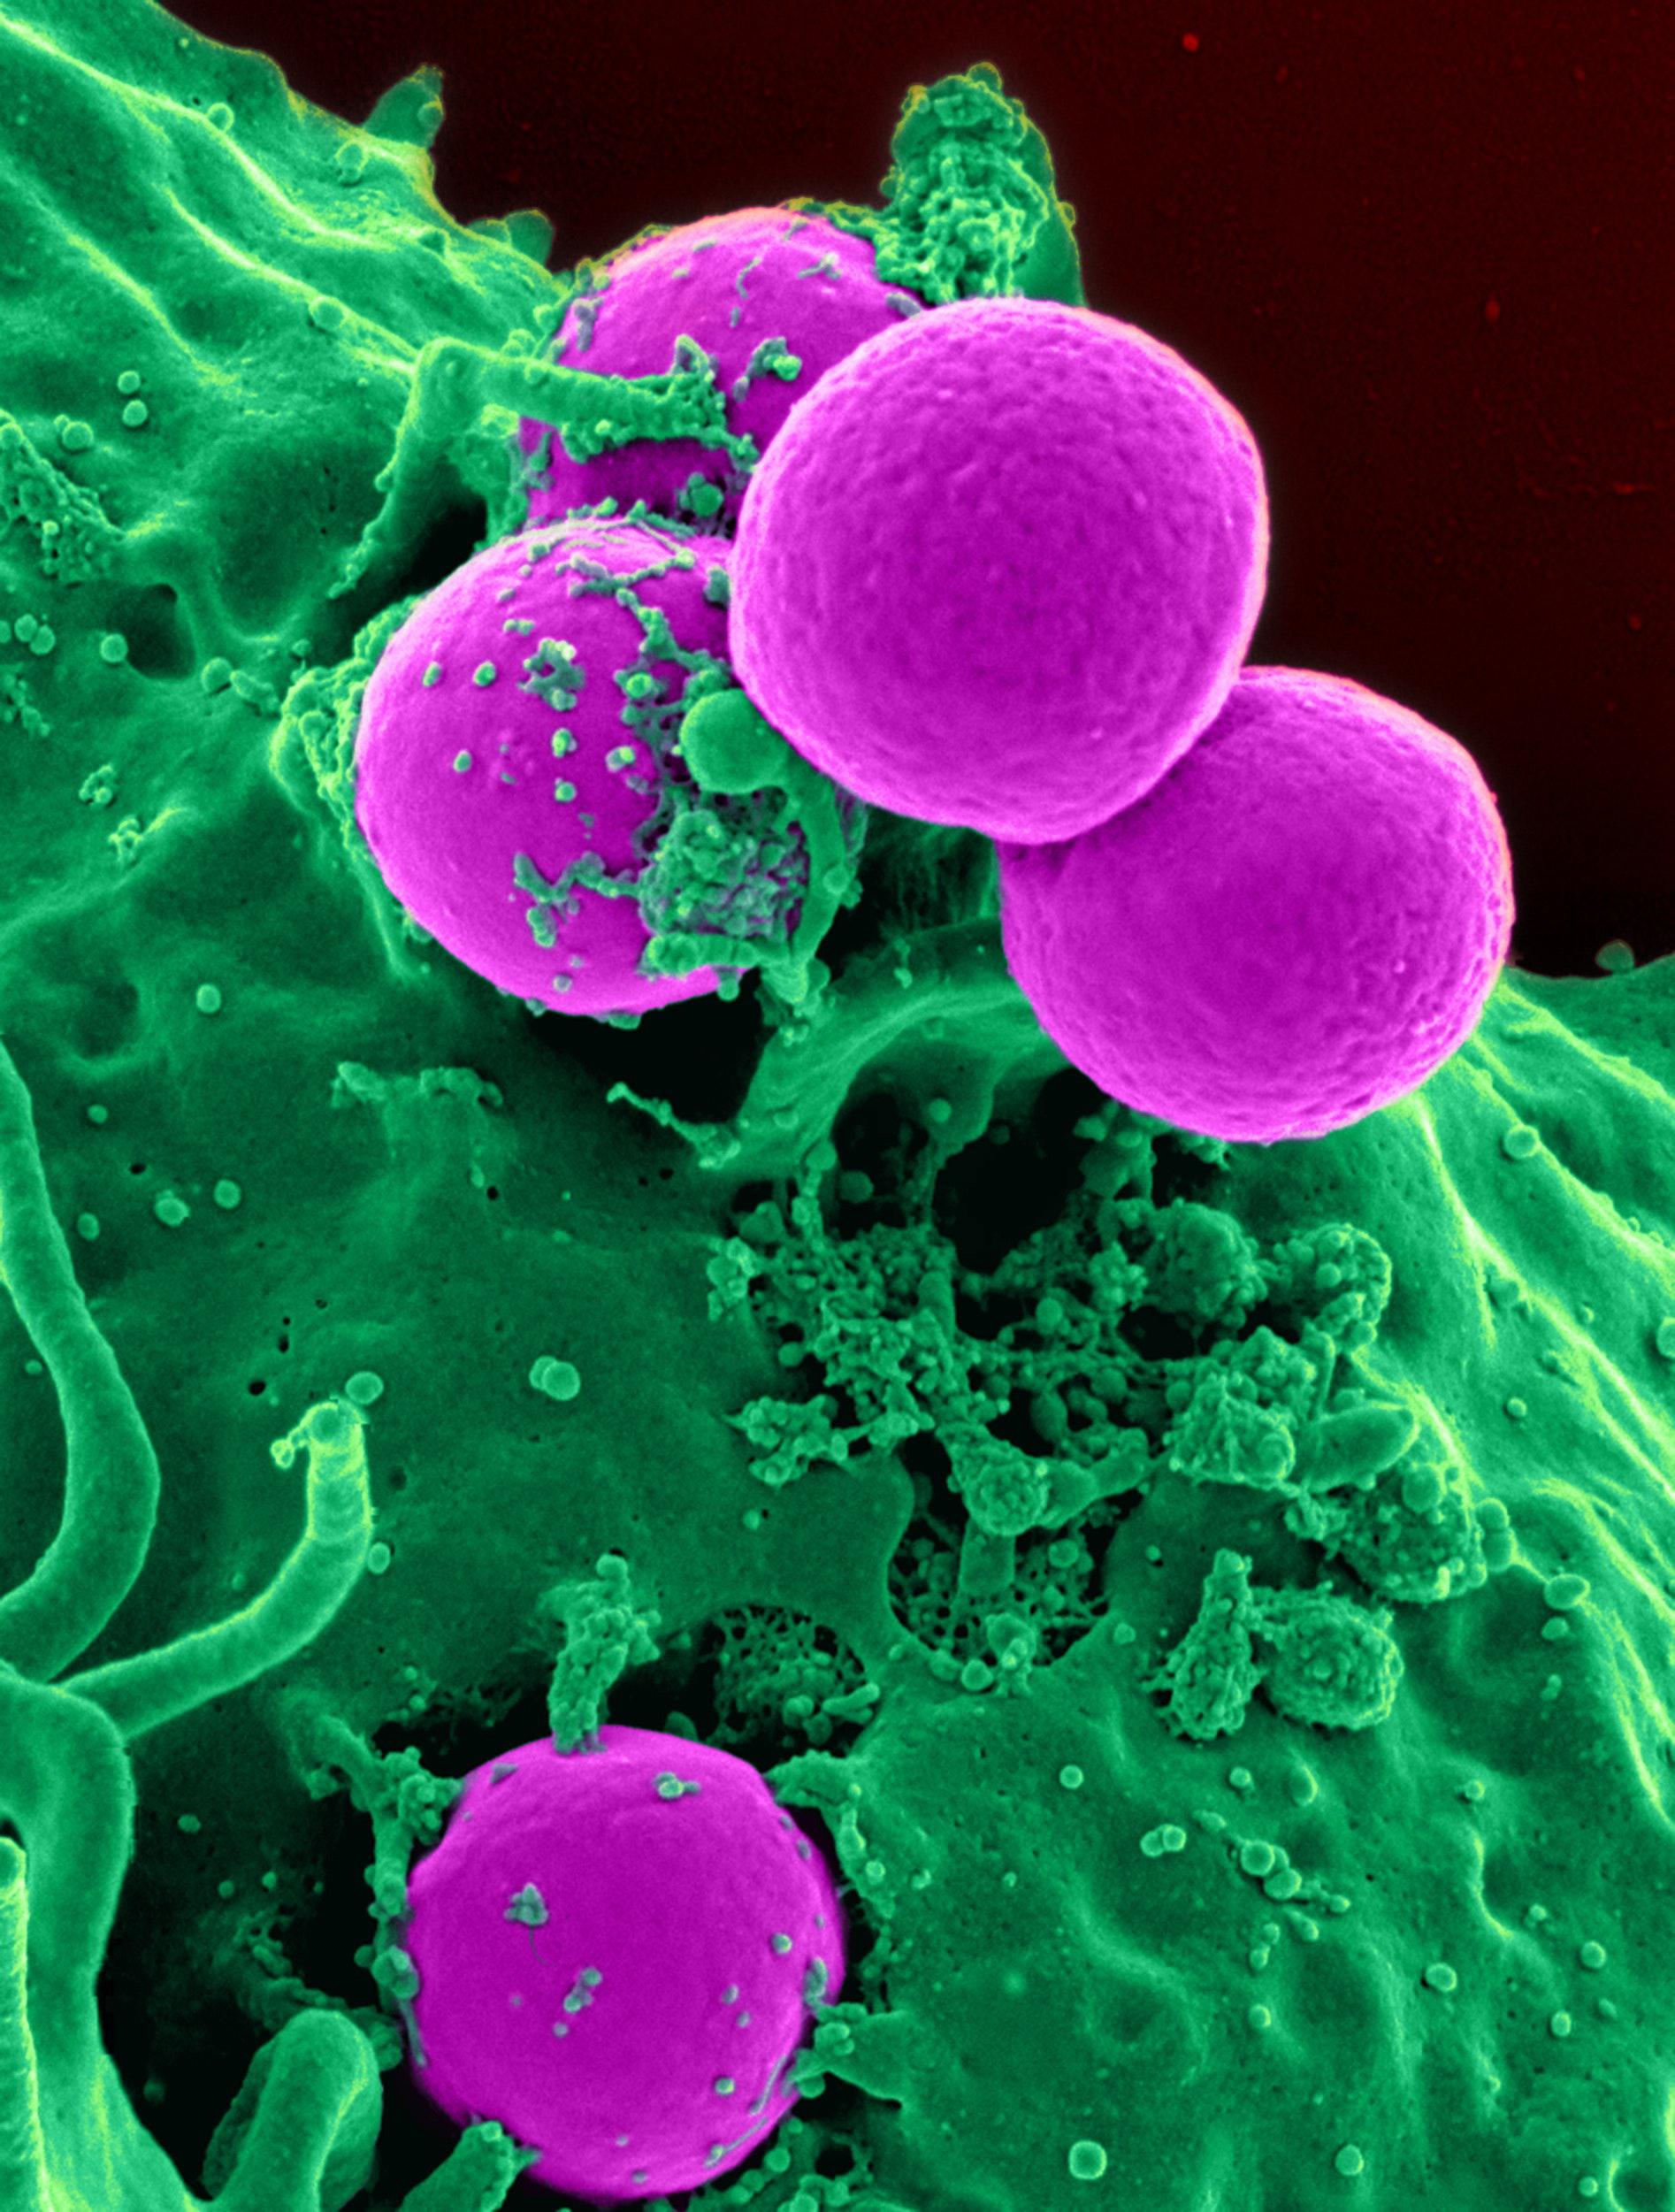 'Super bactérias' matam 1,2 milhão de pessoas por ano, mostra estudo